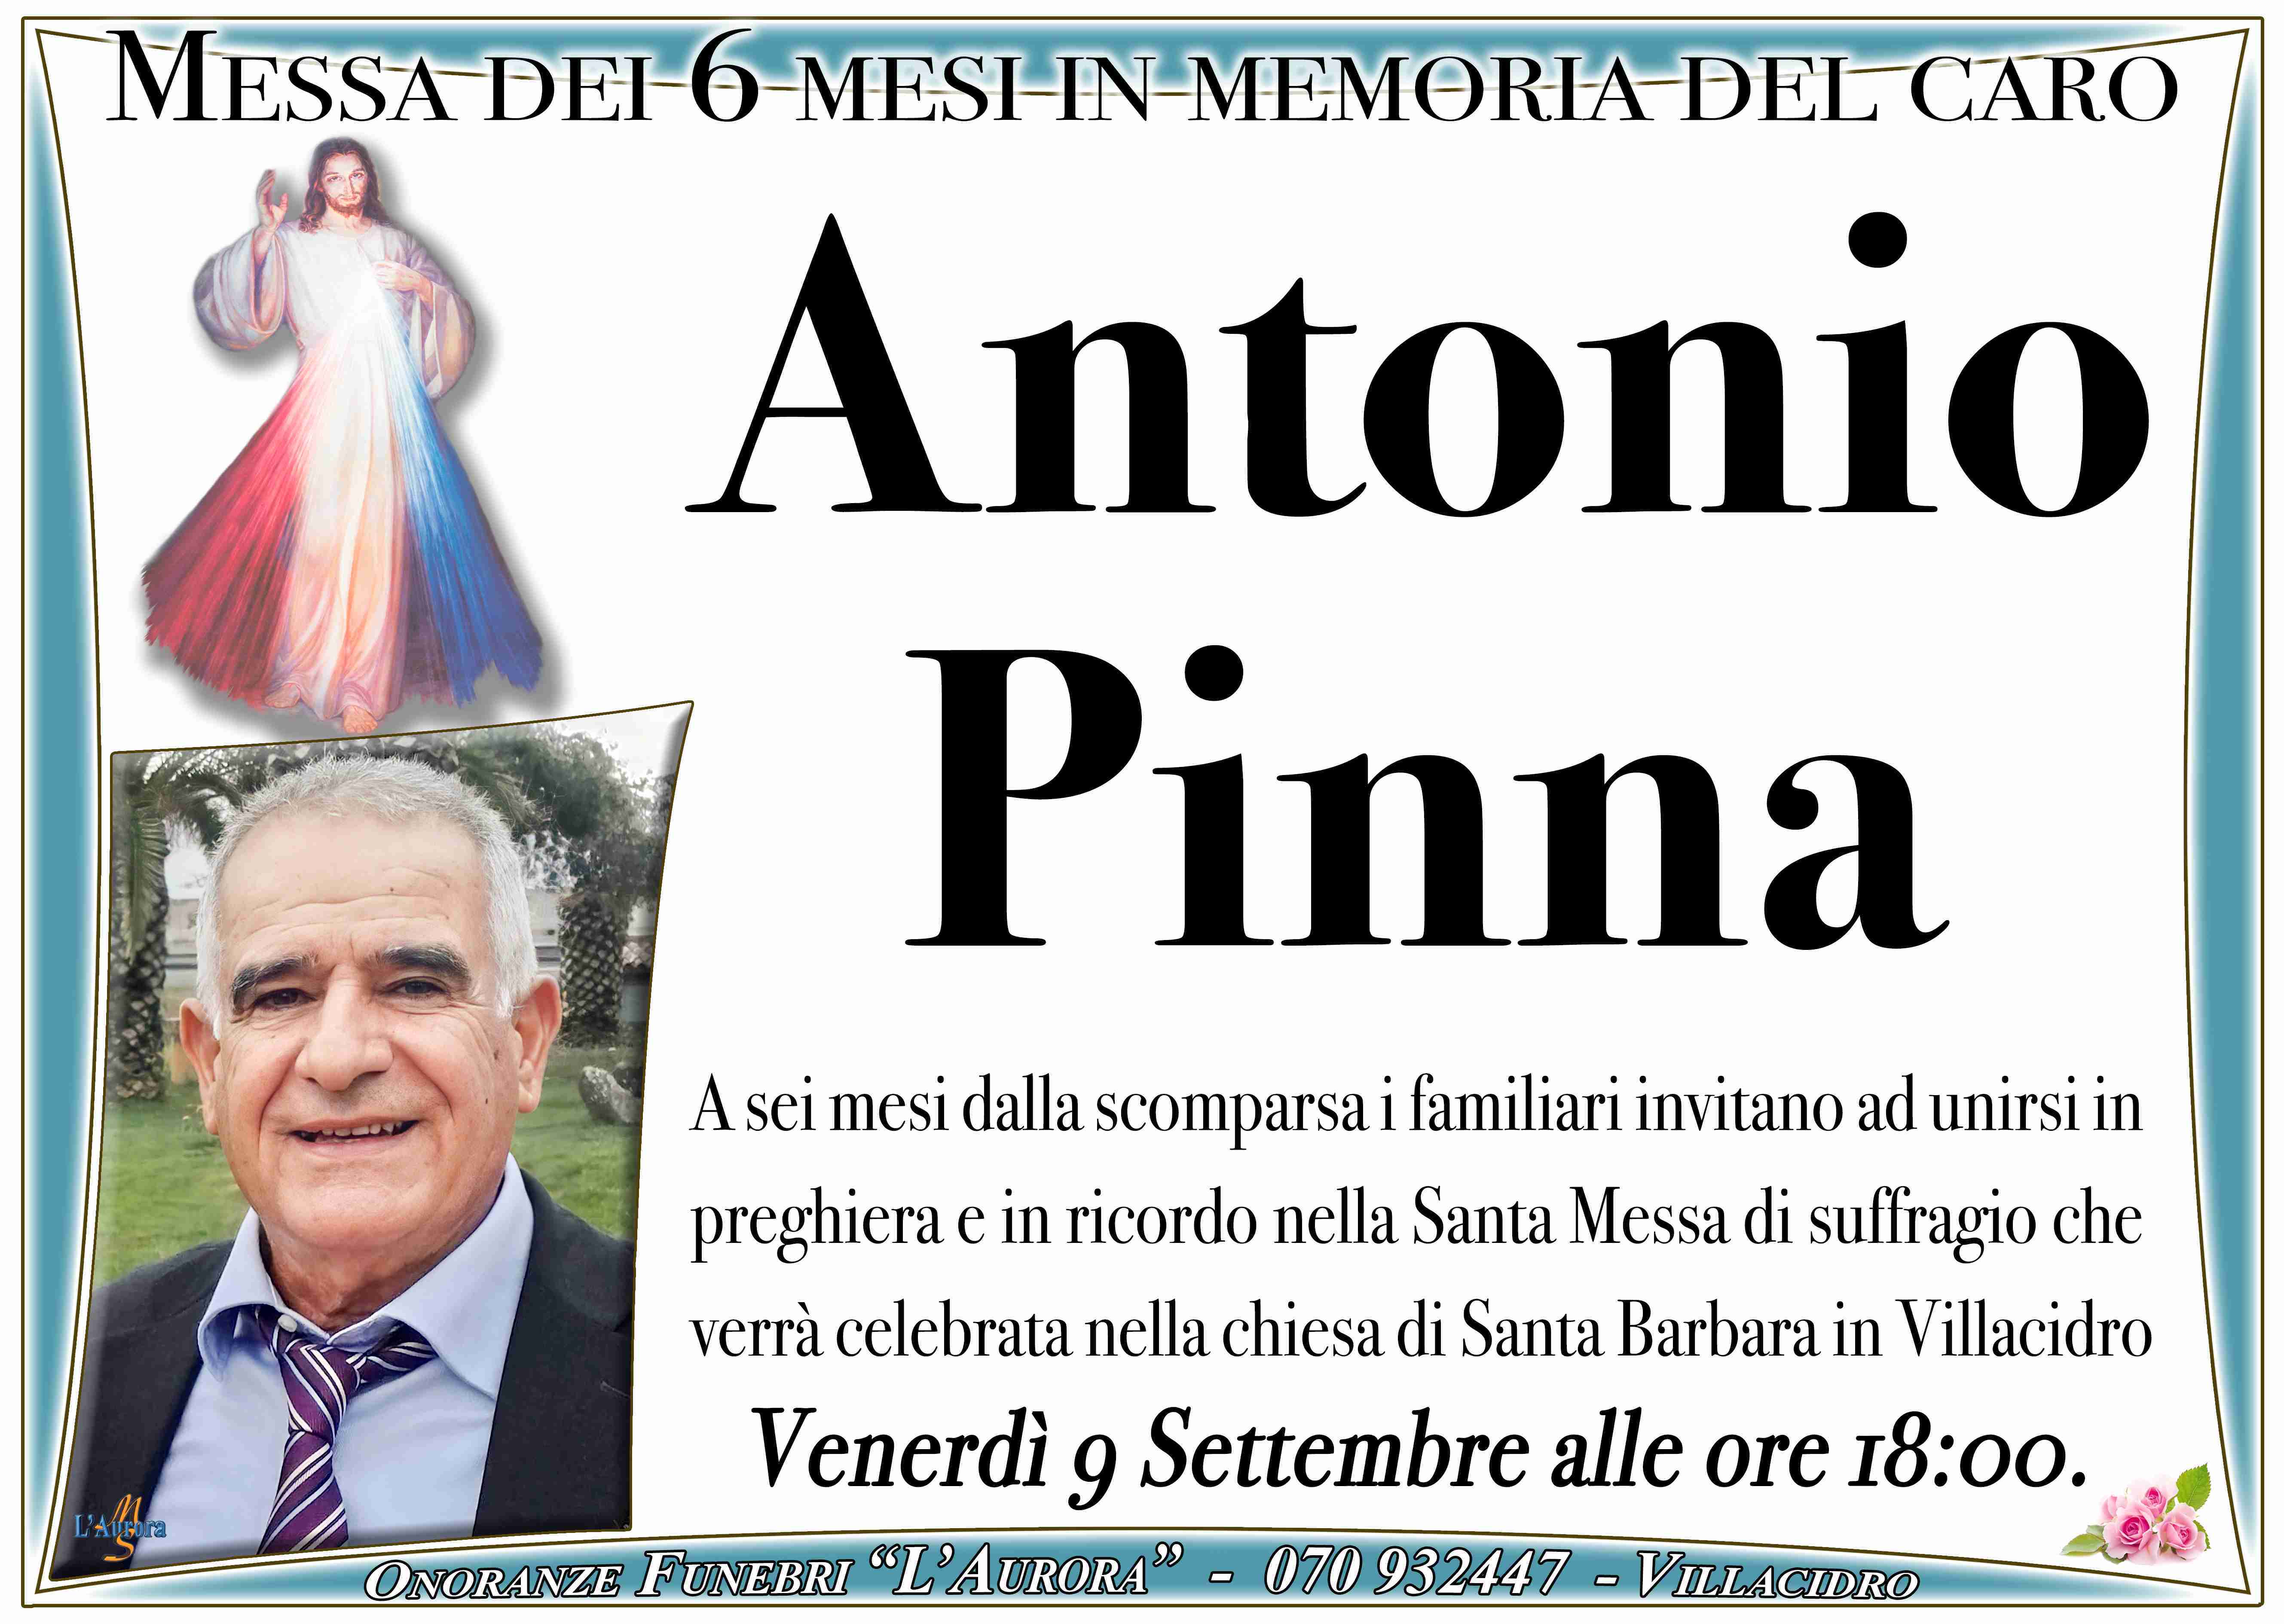 Antonio Pinna